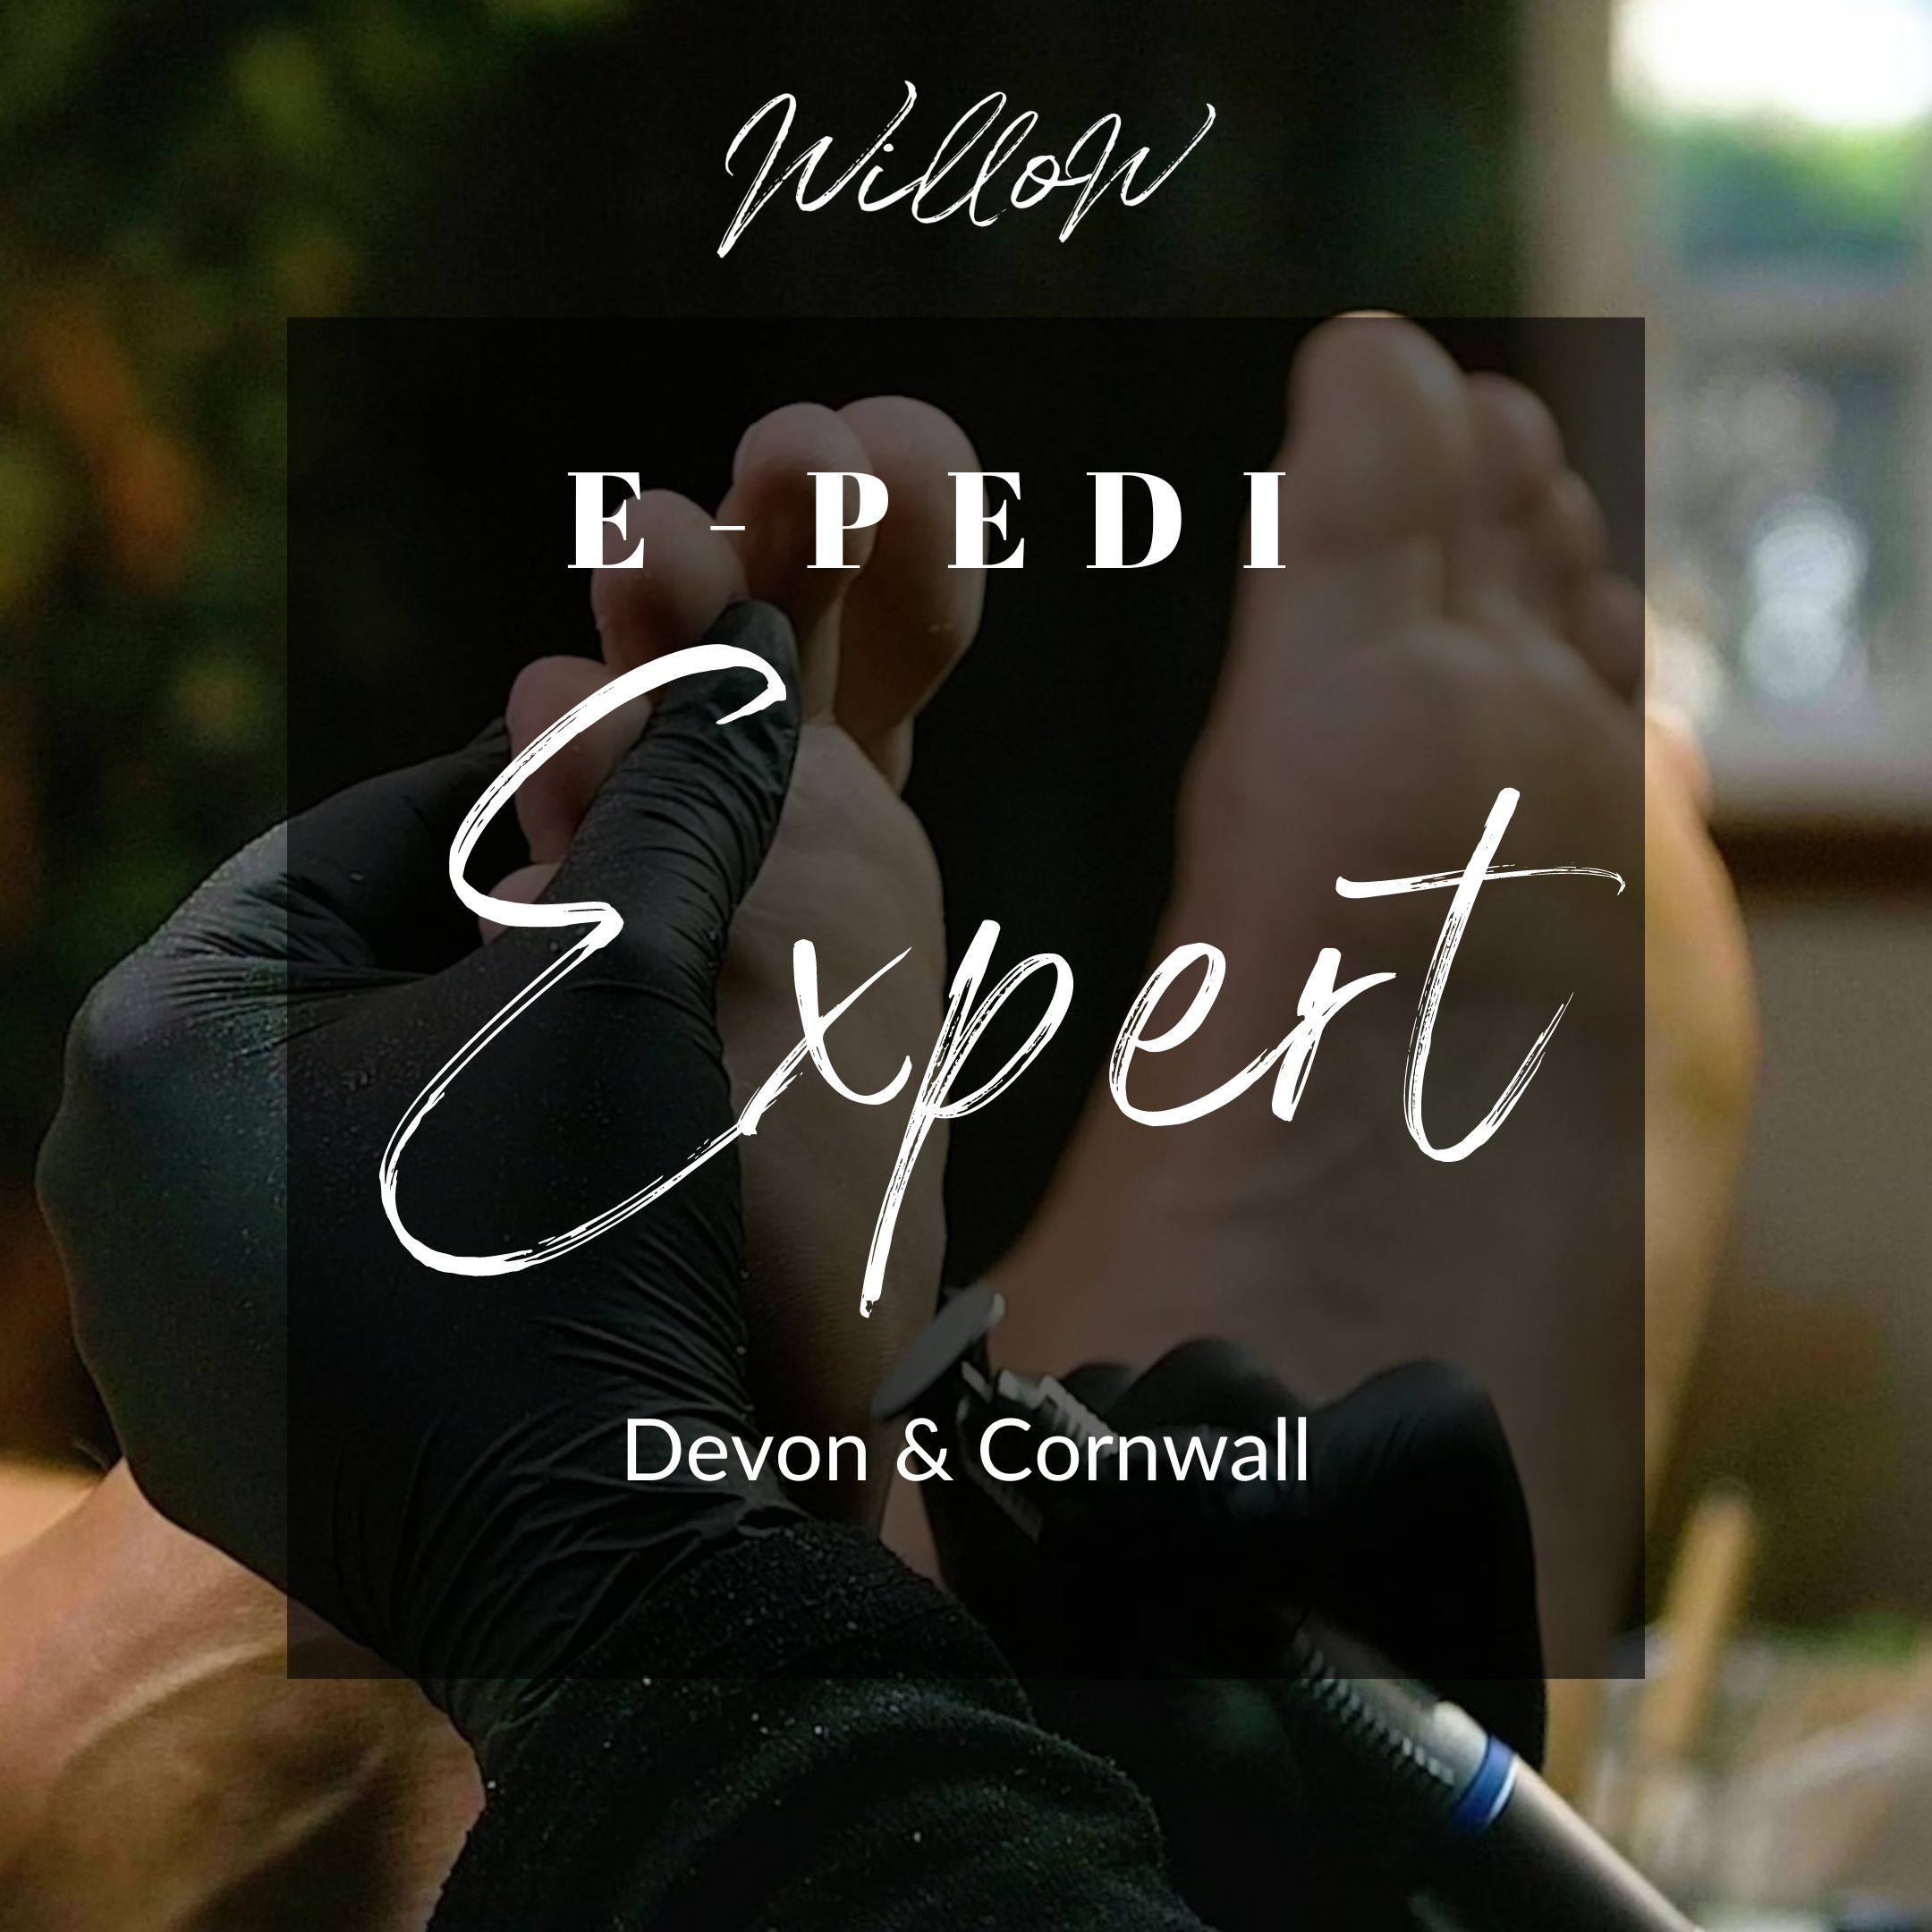 E-Pedi Expert Course - Devon & Cornwall